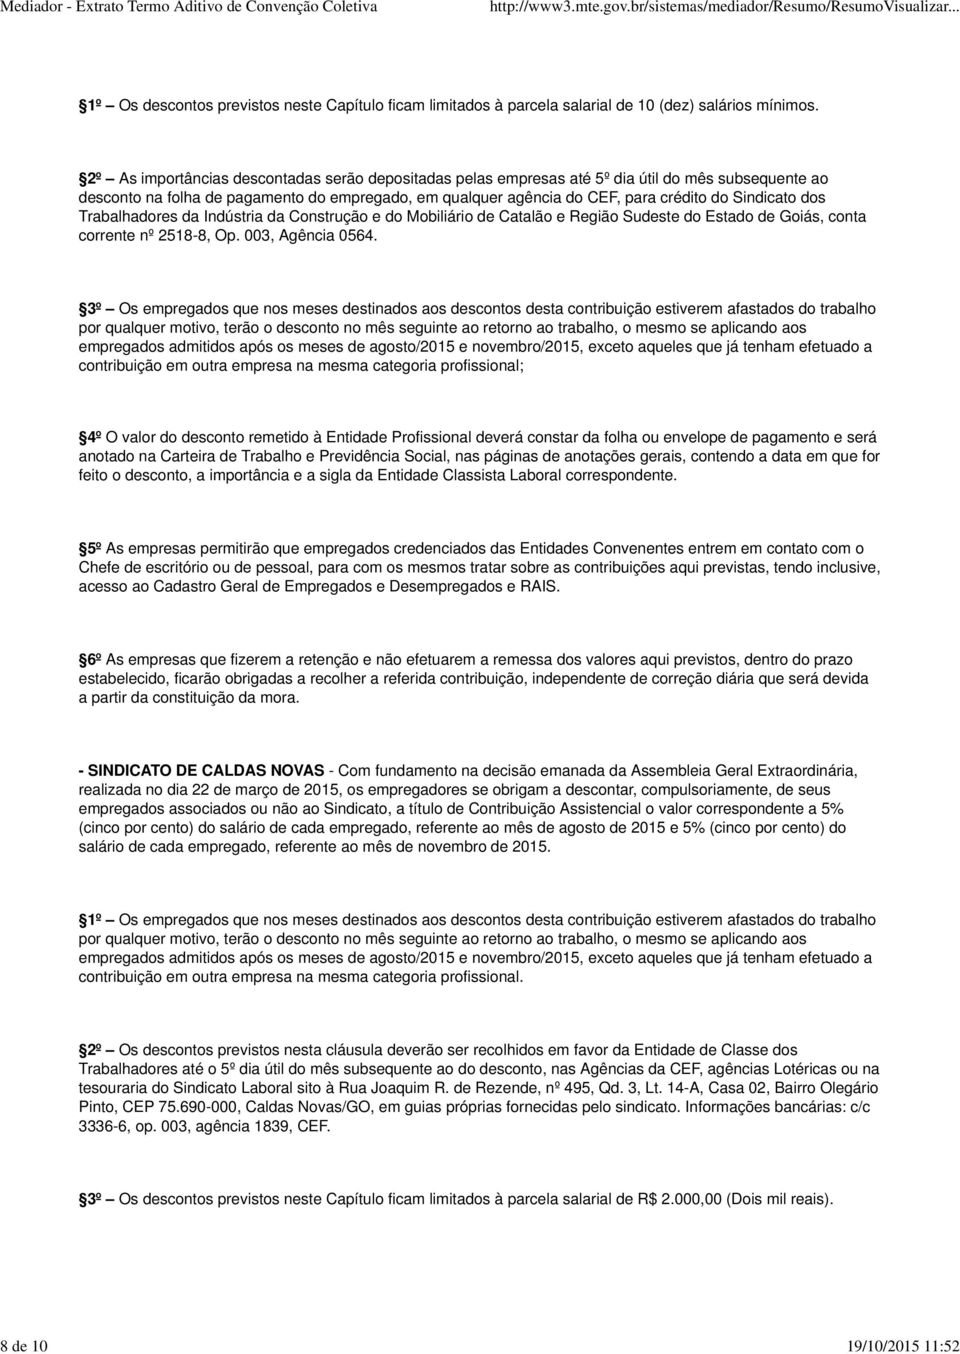 Sindicato dos Trabalhadores da Indústria da Construção e do Mobiliário de Catalão e Região Sudeste do Estado de Goiás, conta corrente nº 2518-8, Op. 003, Agência 0564.